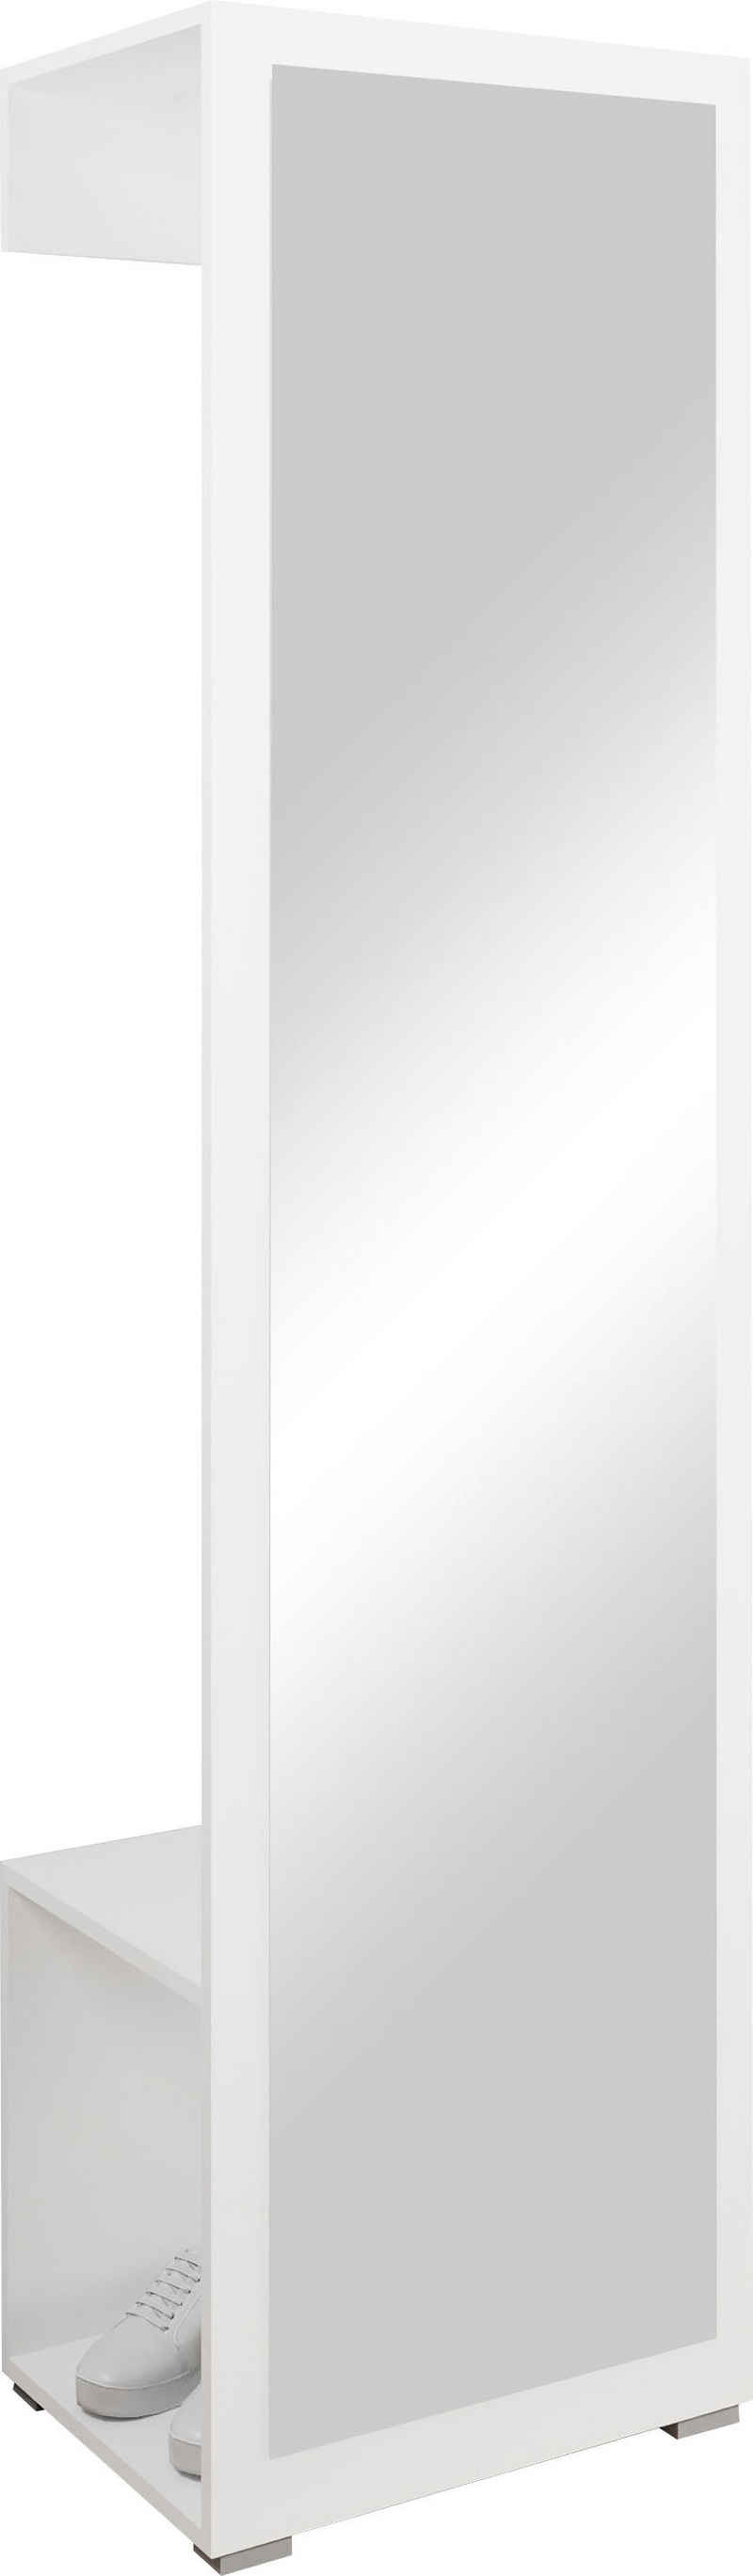 INOSIGN Garderobenschrank »Paris« mit 1 Kleiderstange und 1 Frontspiegel (Höhe 190 cm)